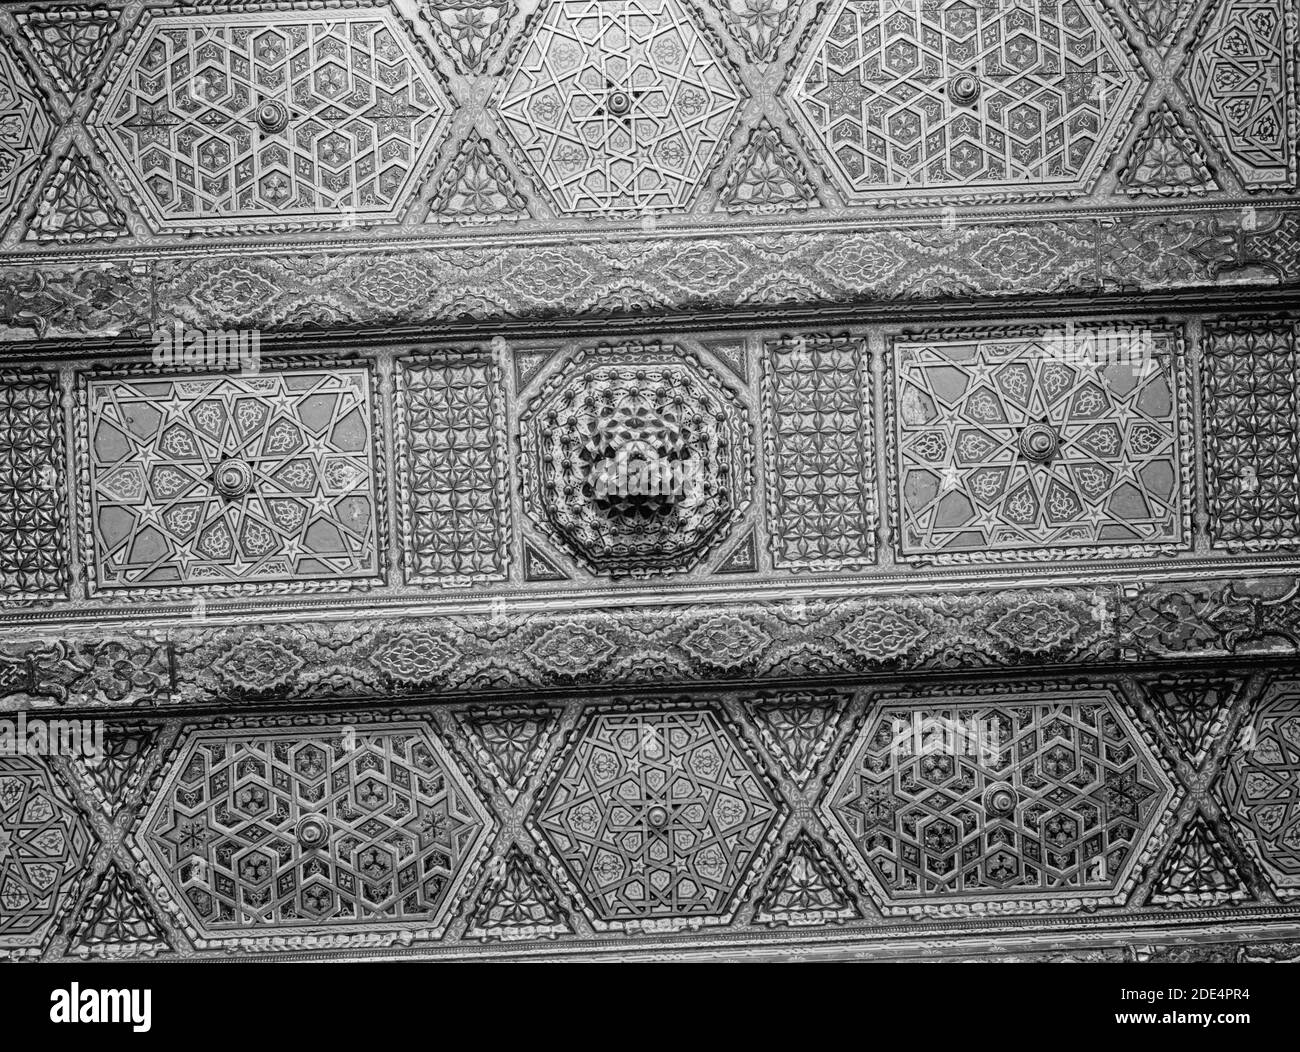 Didascalia originale: Siria. Damasco. Antico soffitto arabesco di una casa di Damasco. - Ubicazione: Siria--Damasco ca. 1898-1946 Foto Stock